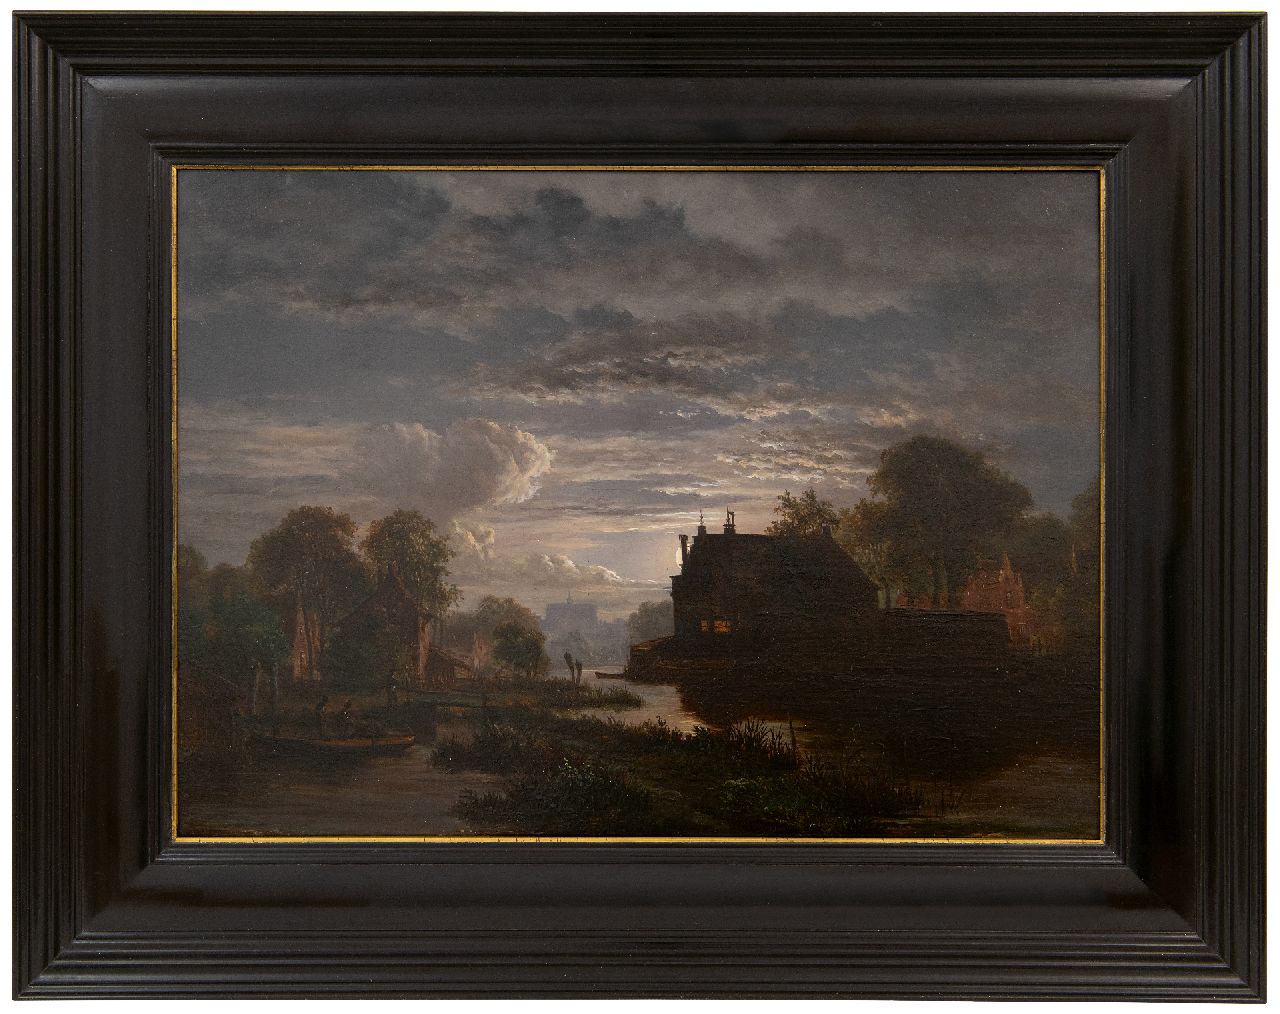 Abels J.Th.  | 'Jacobus' Theodorus Abels | Schilderijen te koop aangeboden | Maanverlicht rivierlandschap bij een stad, olieverf op paneel 28,8 x 39,1 cm